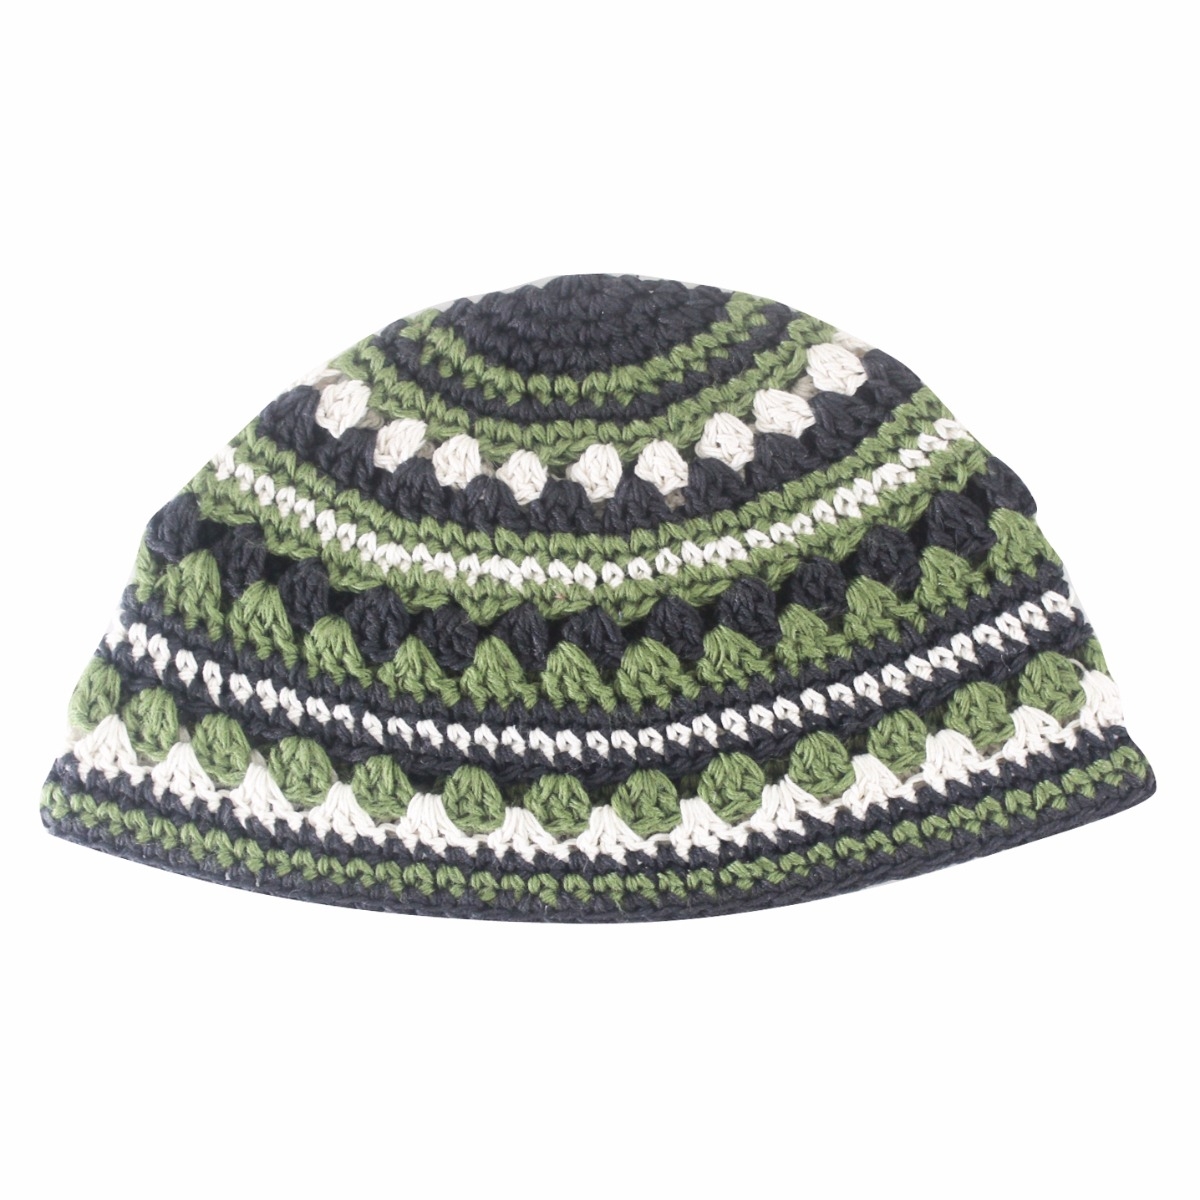 Crocheted Green Frik Kippah with White Design - 1